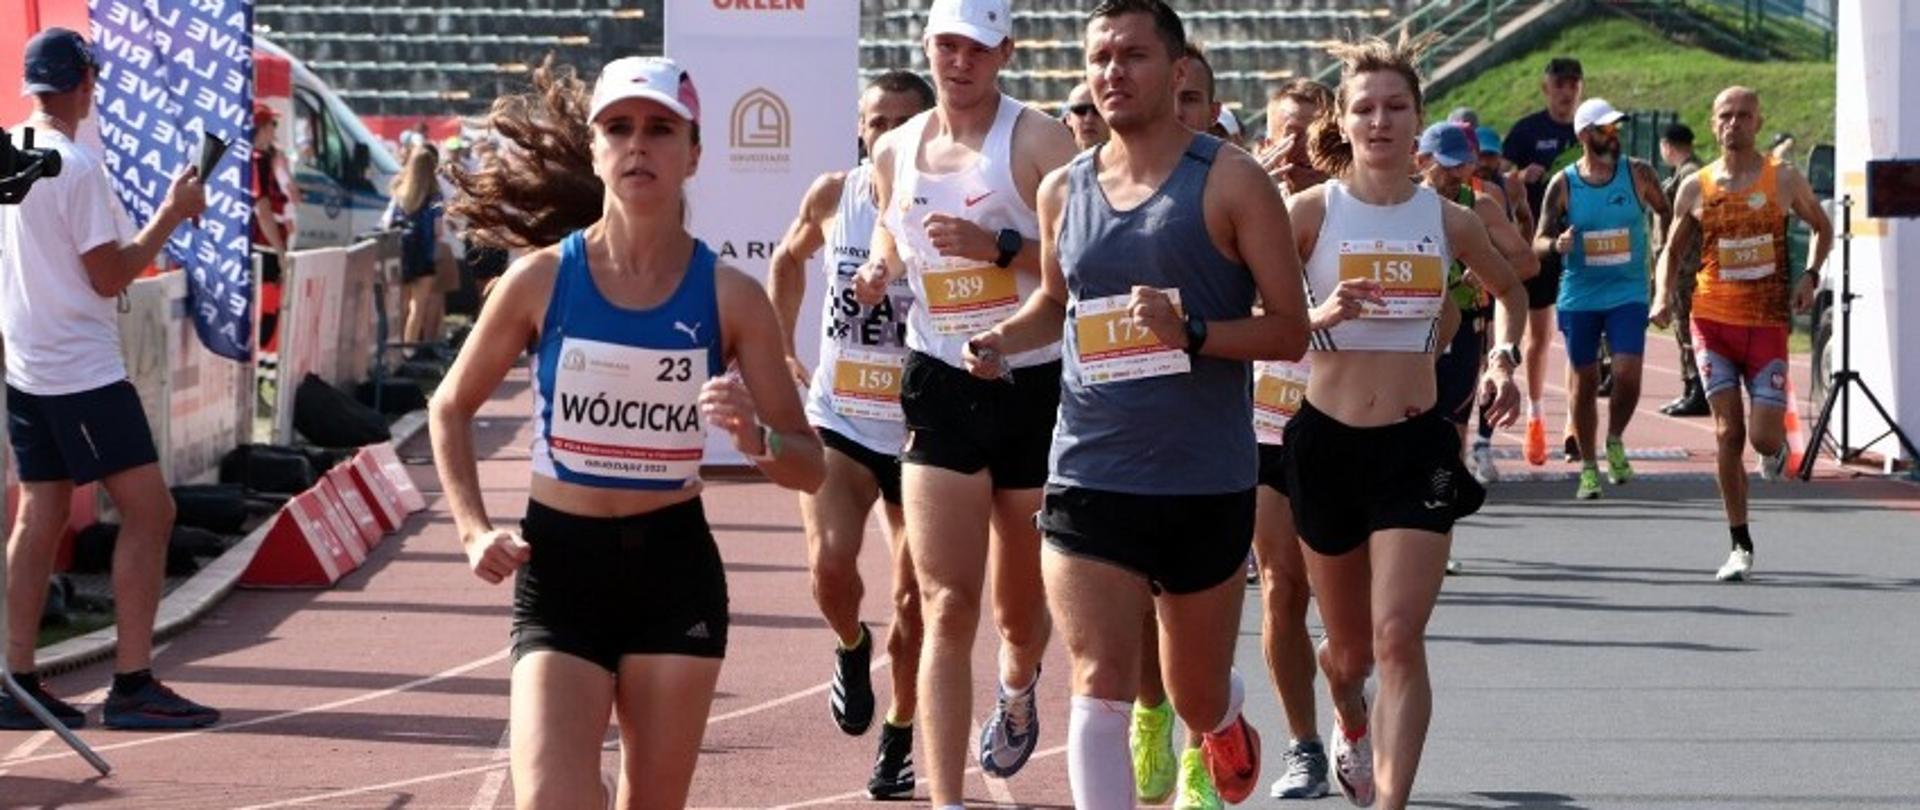 Magdalena Wójcicka na trasie półmaratonu